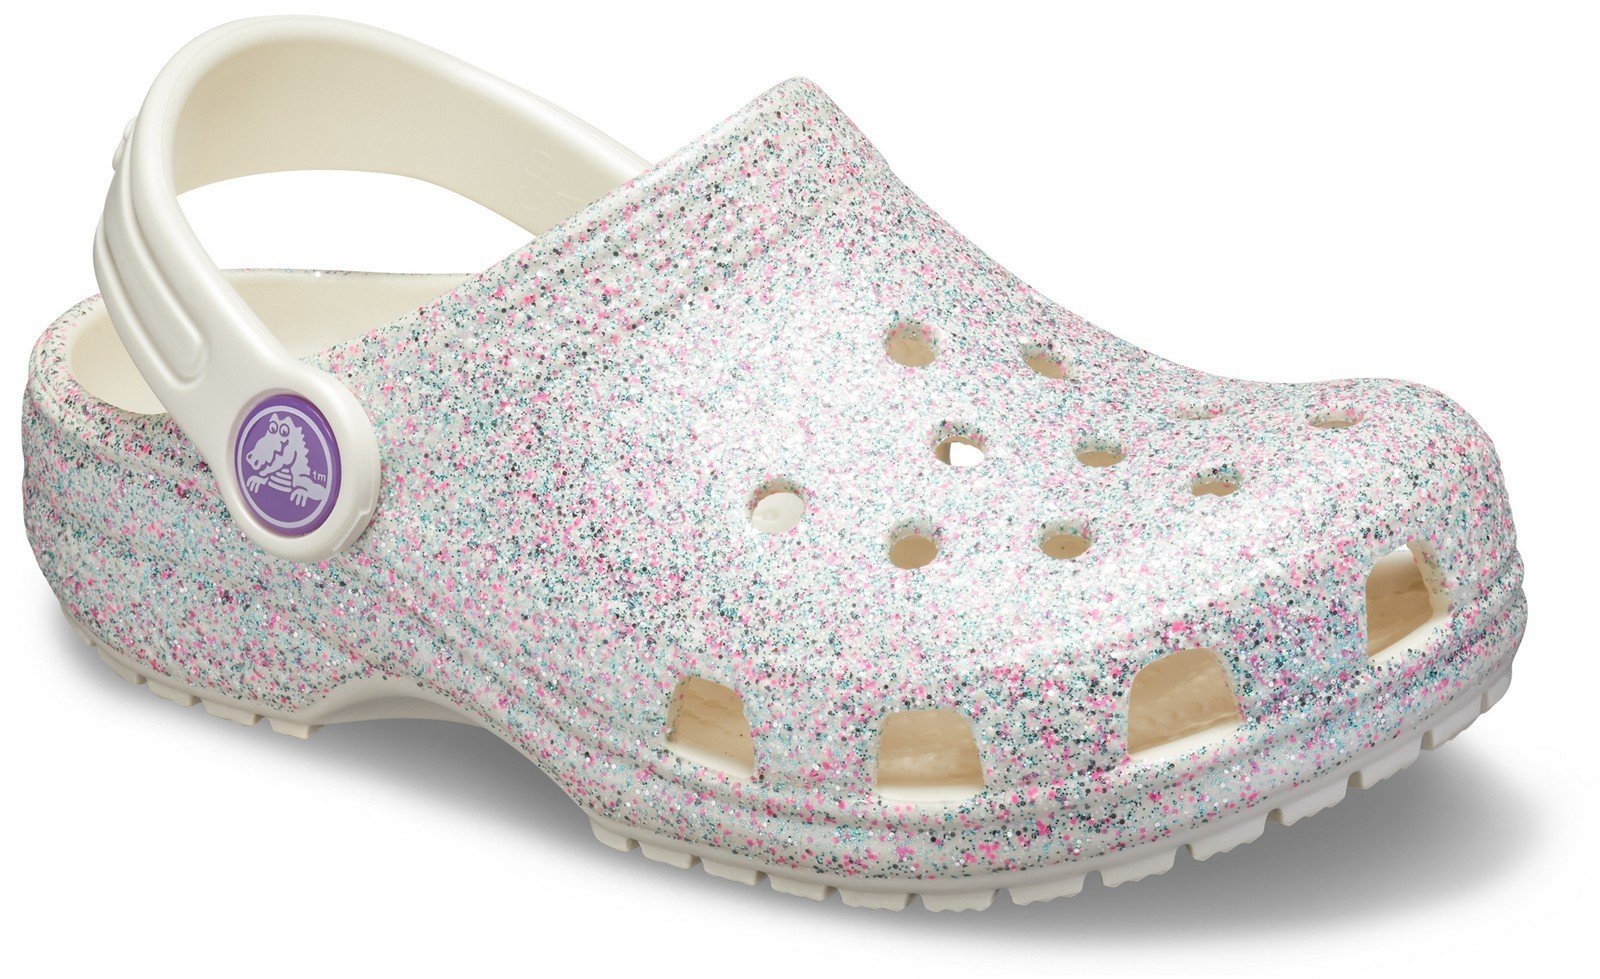 Crocs Kid's Classic Glitter Clog Slip On Sandal Oyster 27505 - Oyster 4 UK